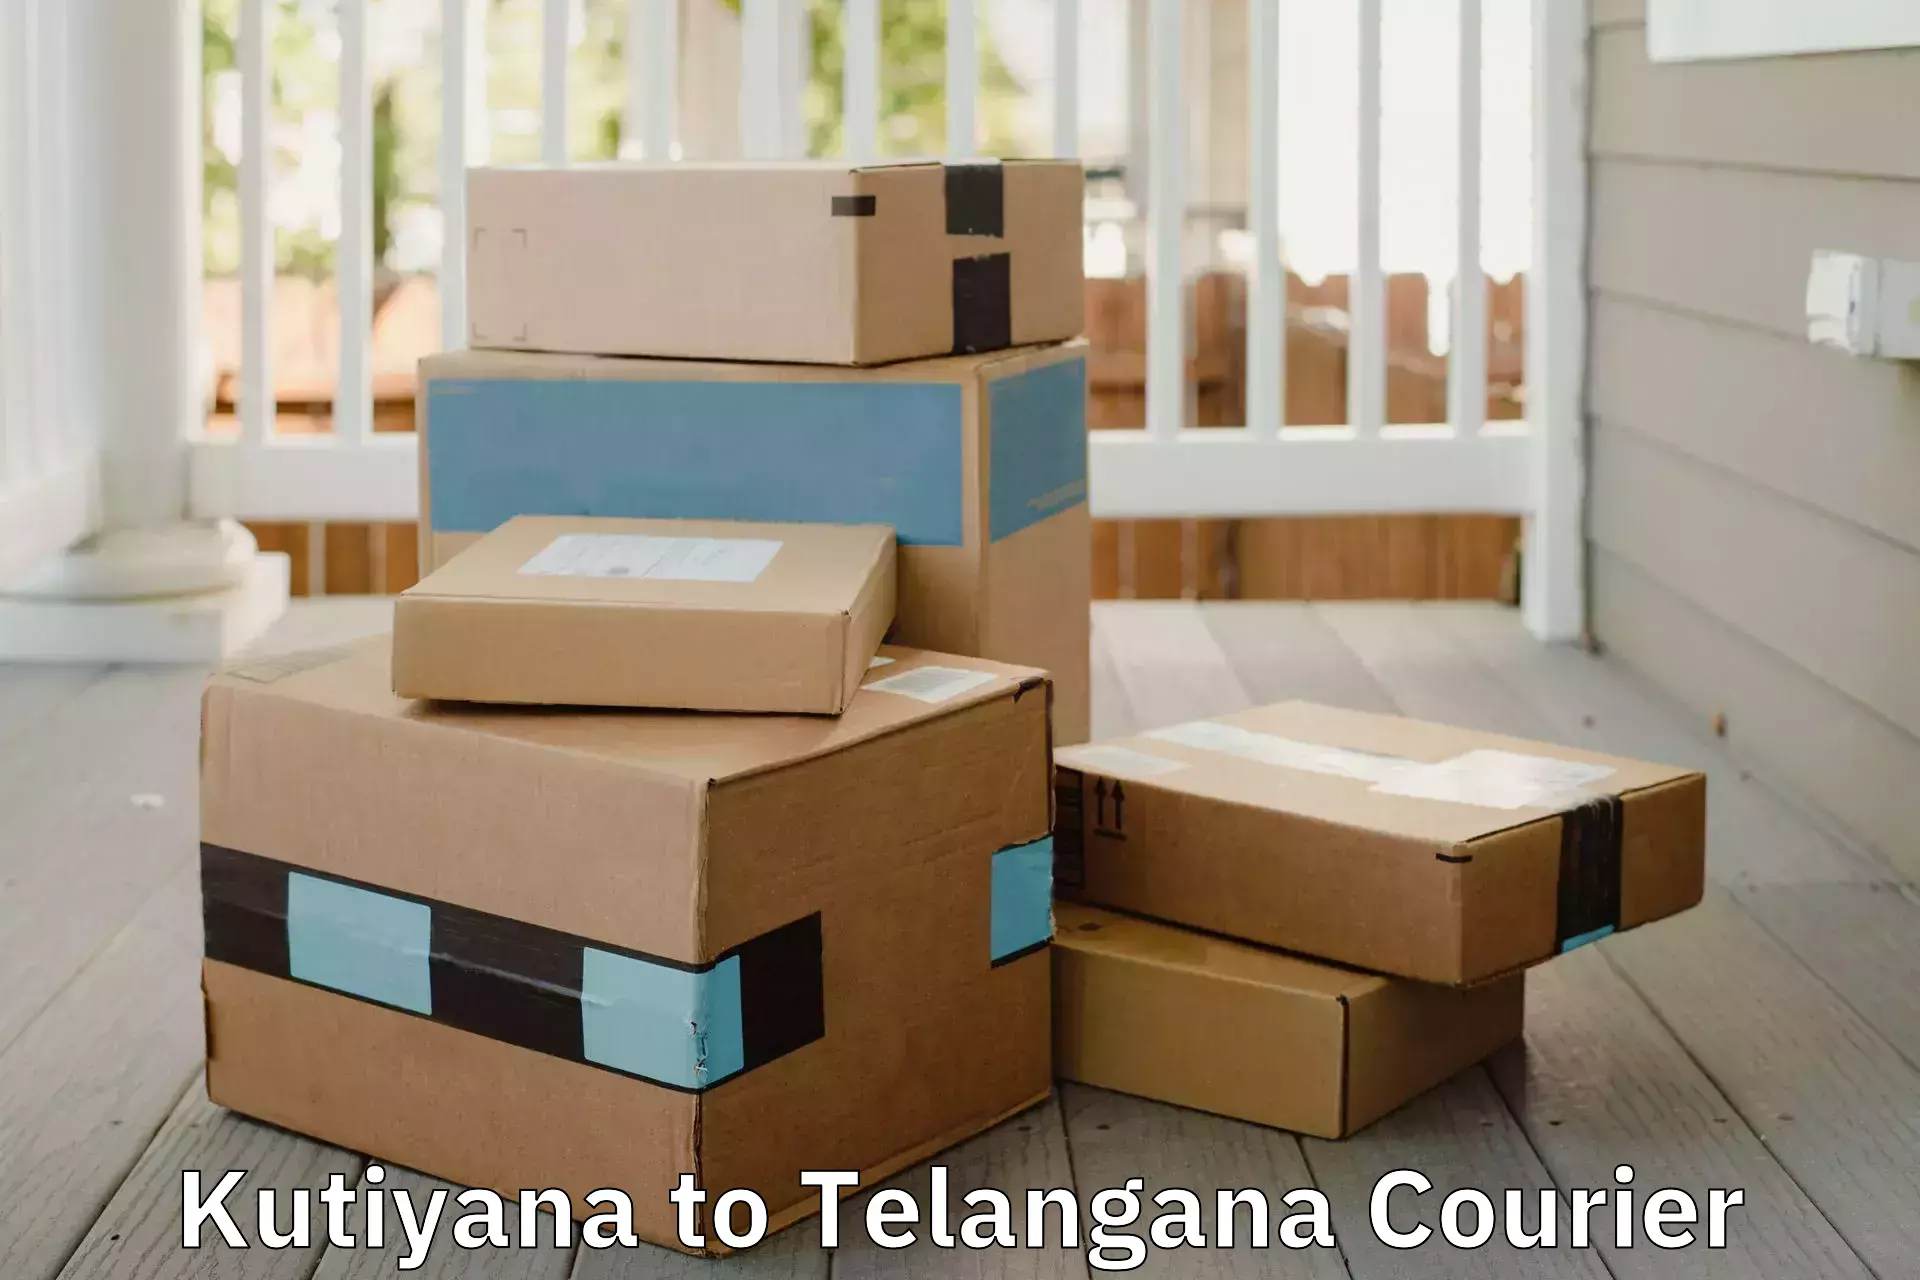 Furniture transport service in Kutiyana to Telangana